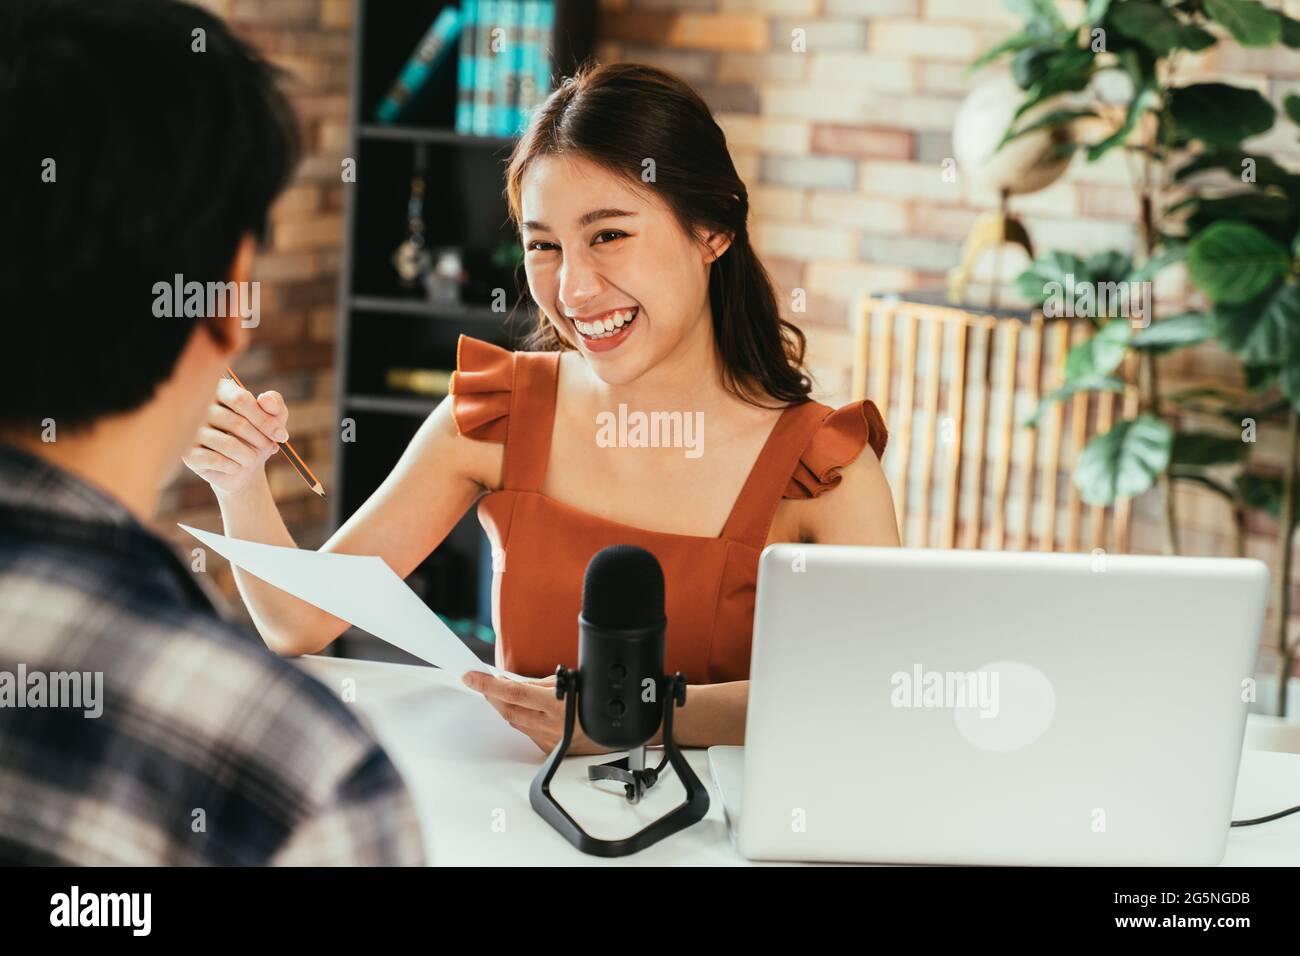 Fröhliche junge asiatische weibliche Podcasterin hält einen Fragebogen, während sie männliche Gäste am Arbeitsplatz mit Mikrofon und Laptop interviewt Stockfoto